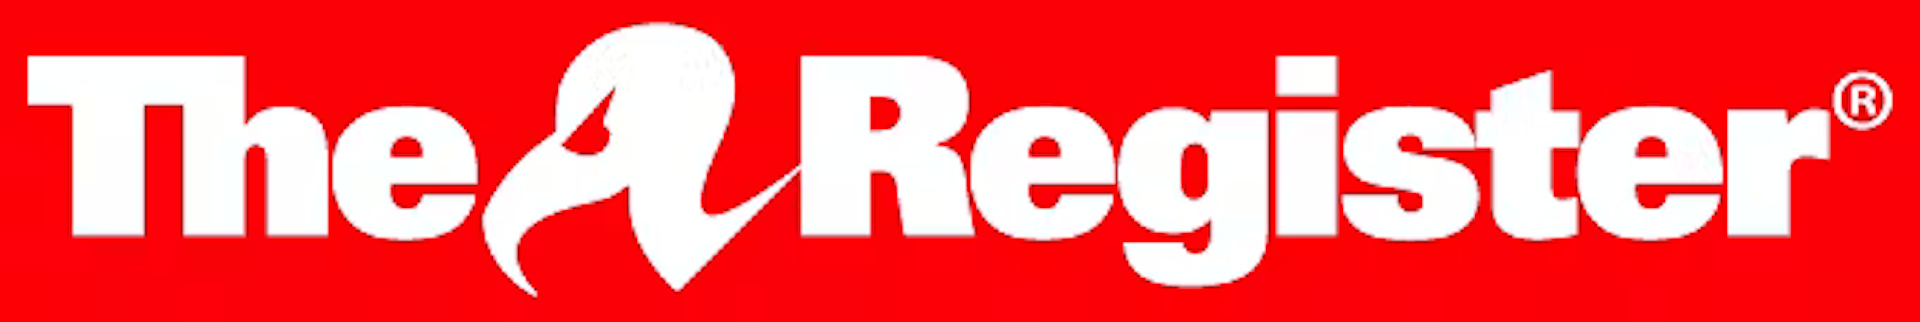 red logo sans strapline